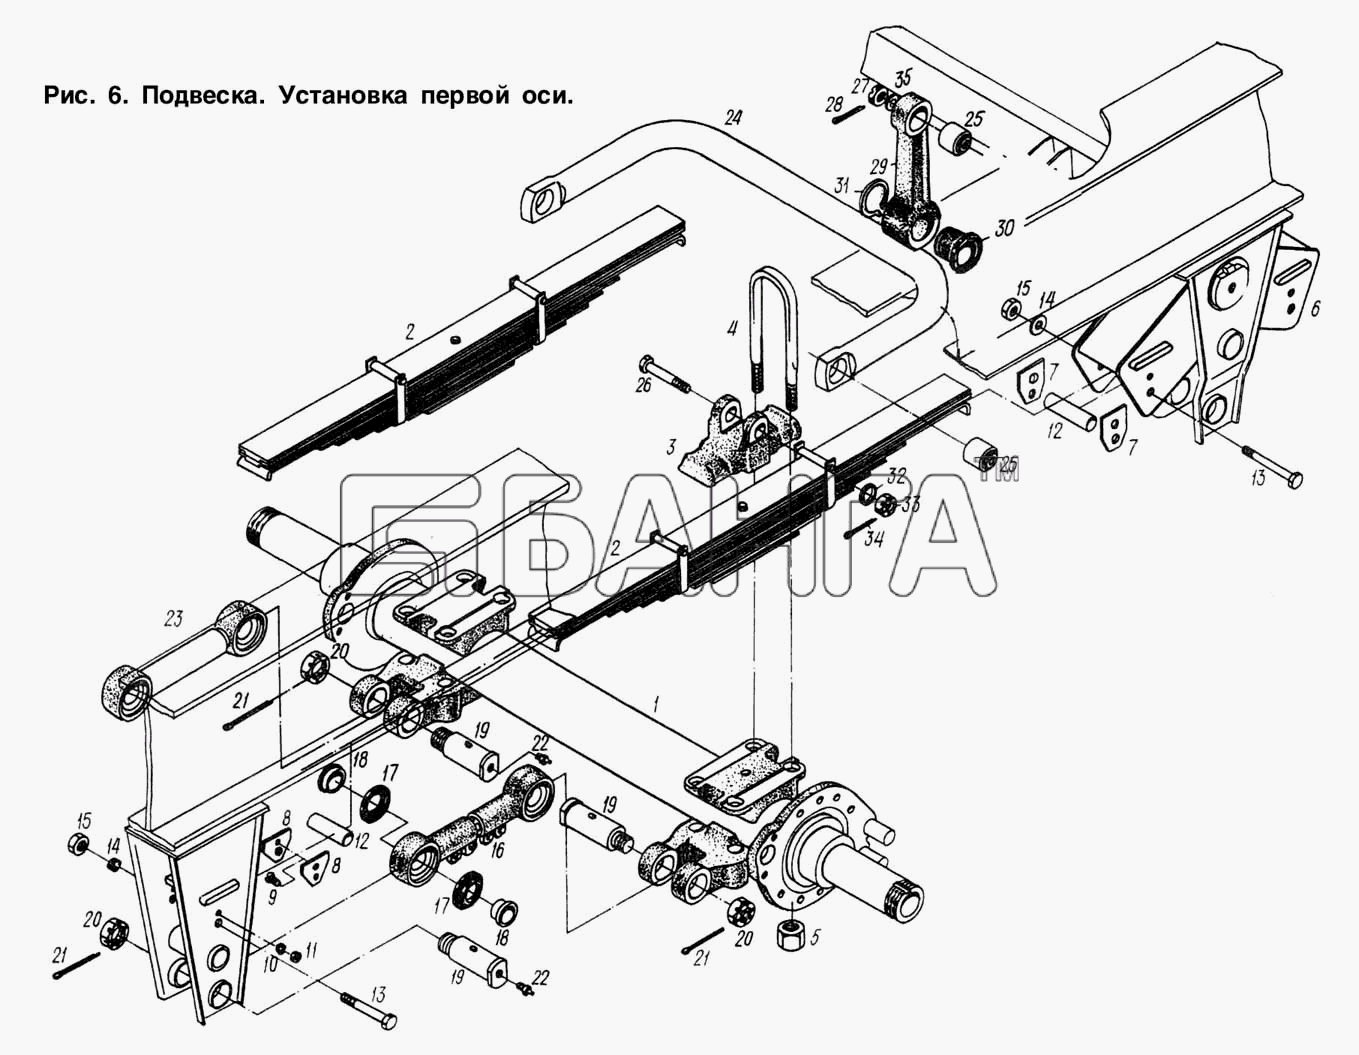 МАЗ МАЗ-93892 Схема Подвеска. Установка первой оси-12 banga.ua